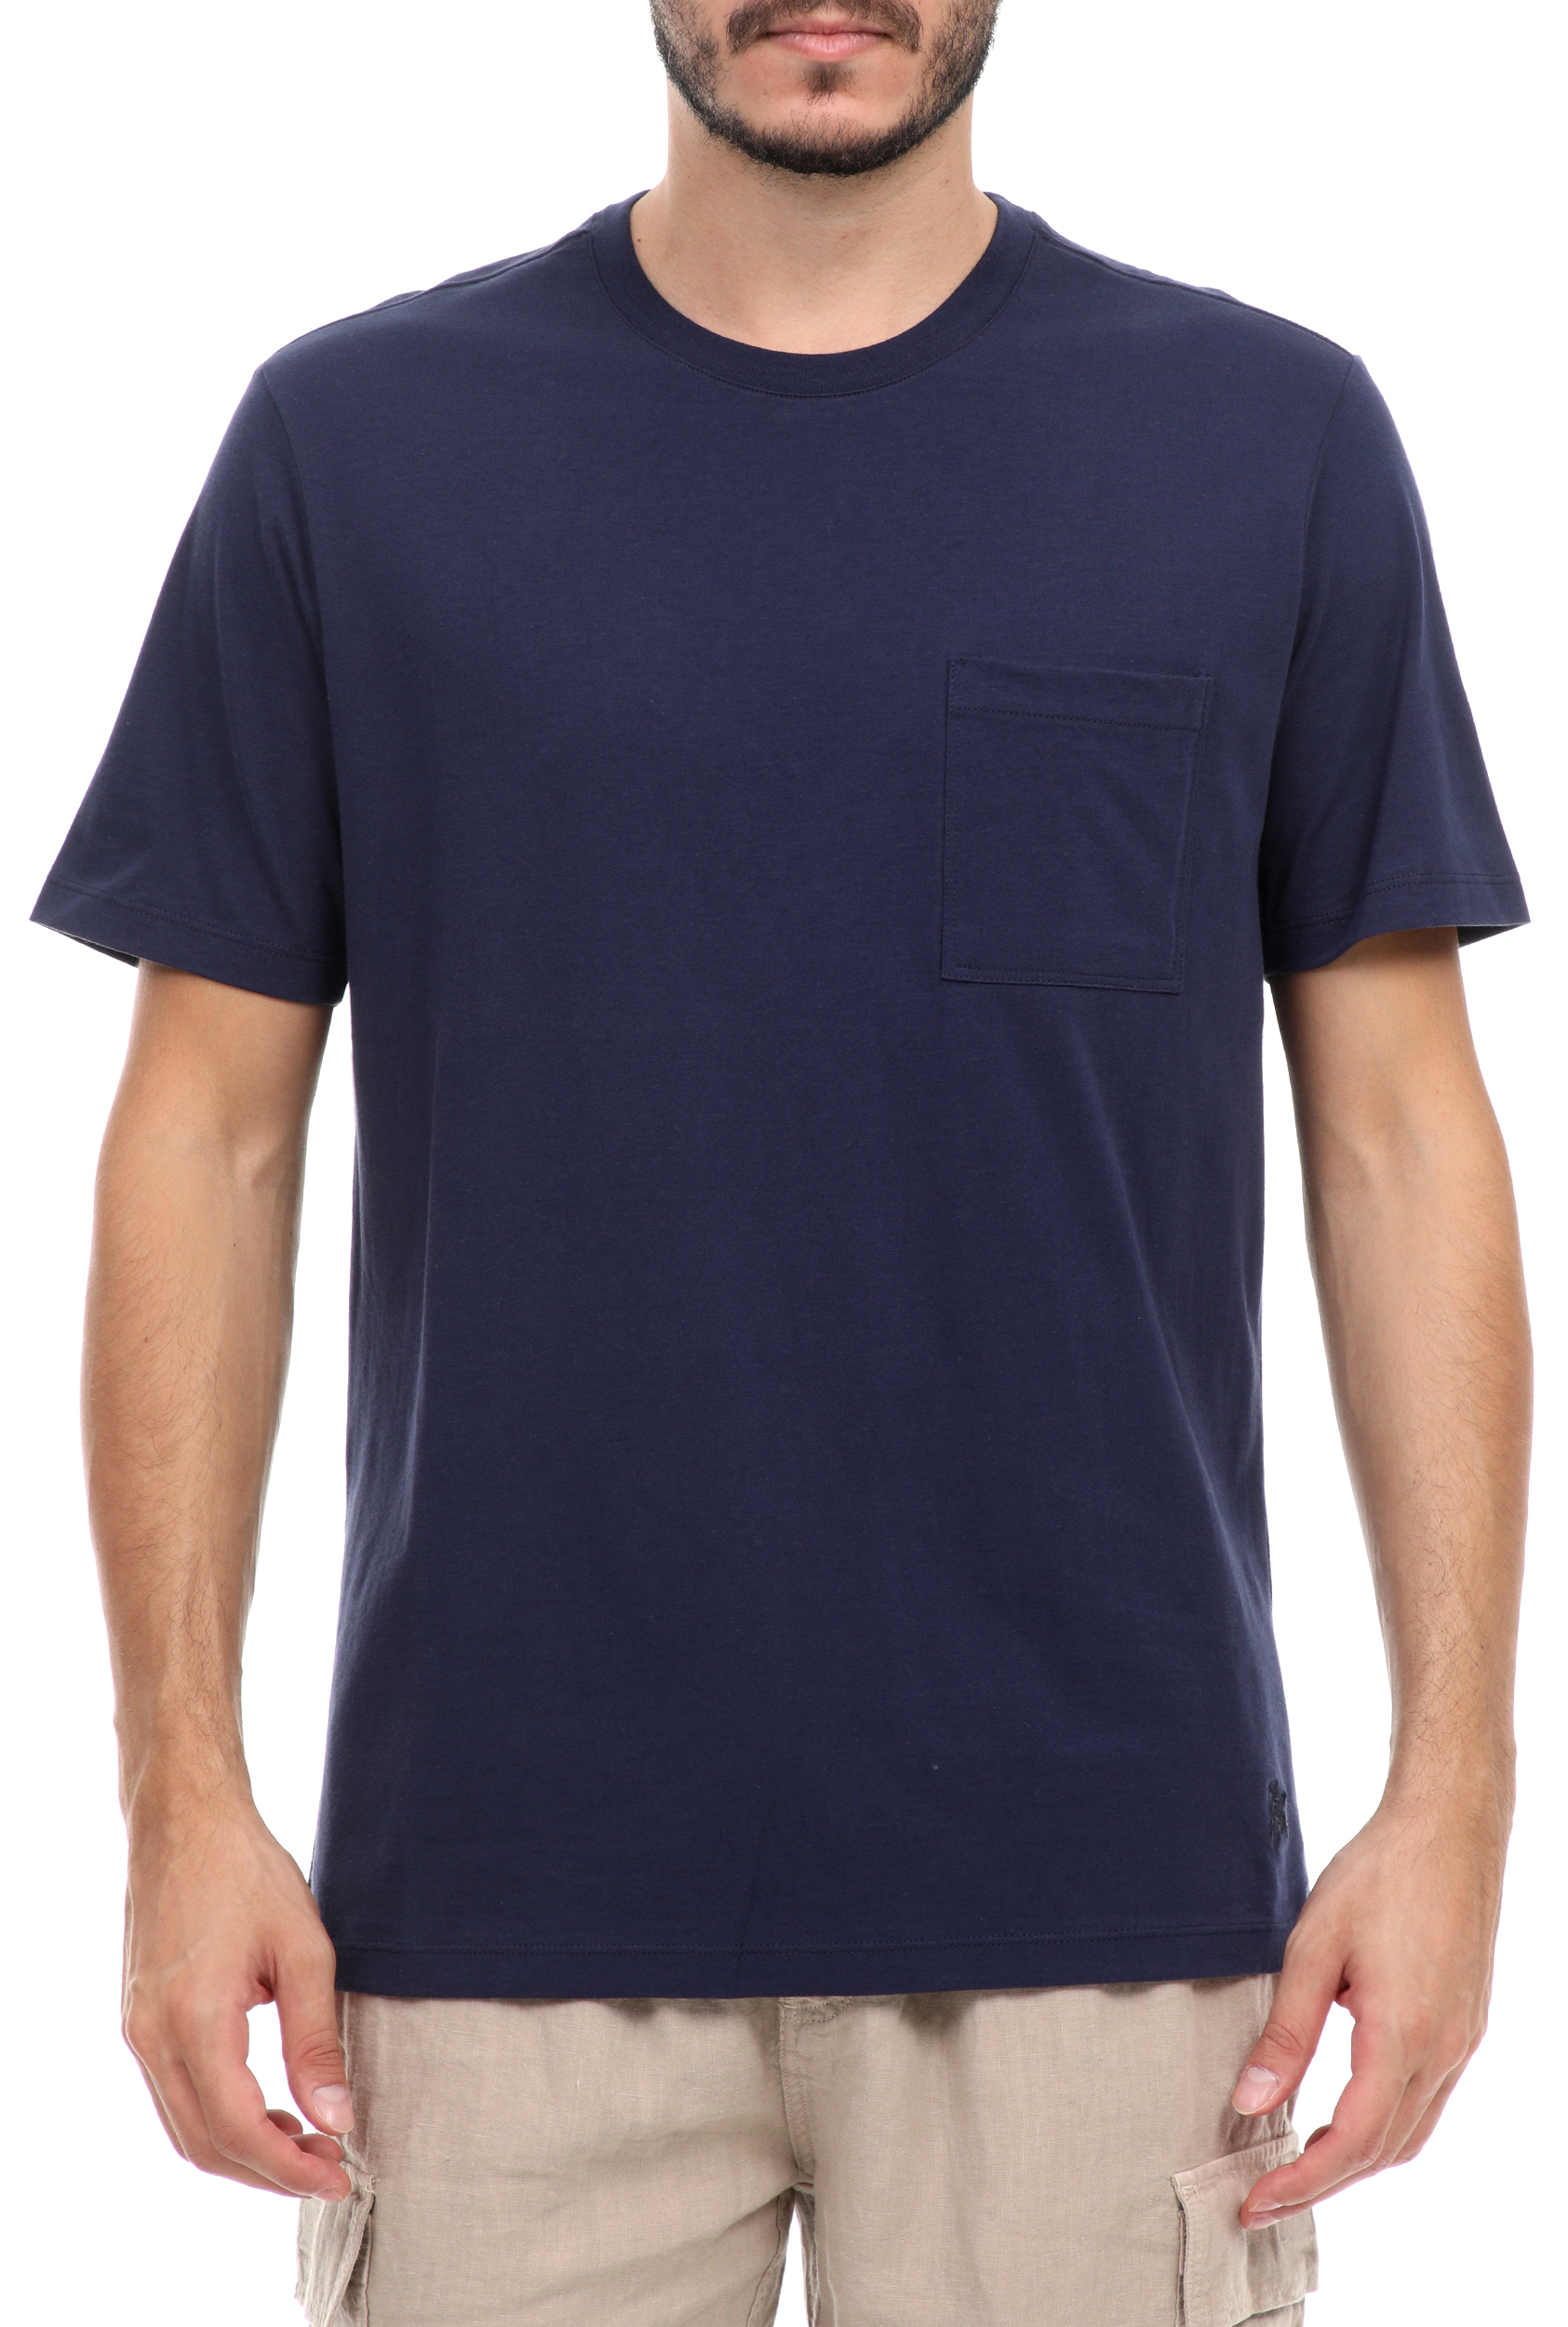 Ανδρικά/Ρούχα/Μπλούζες/Κοντομάνικες VILEBREQUIN - Ανδρικό t-shirt VILEBREQUIN TEEGUS μπλε